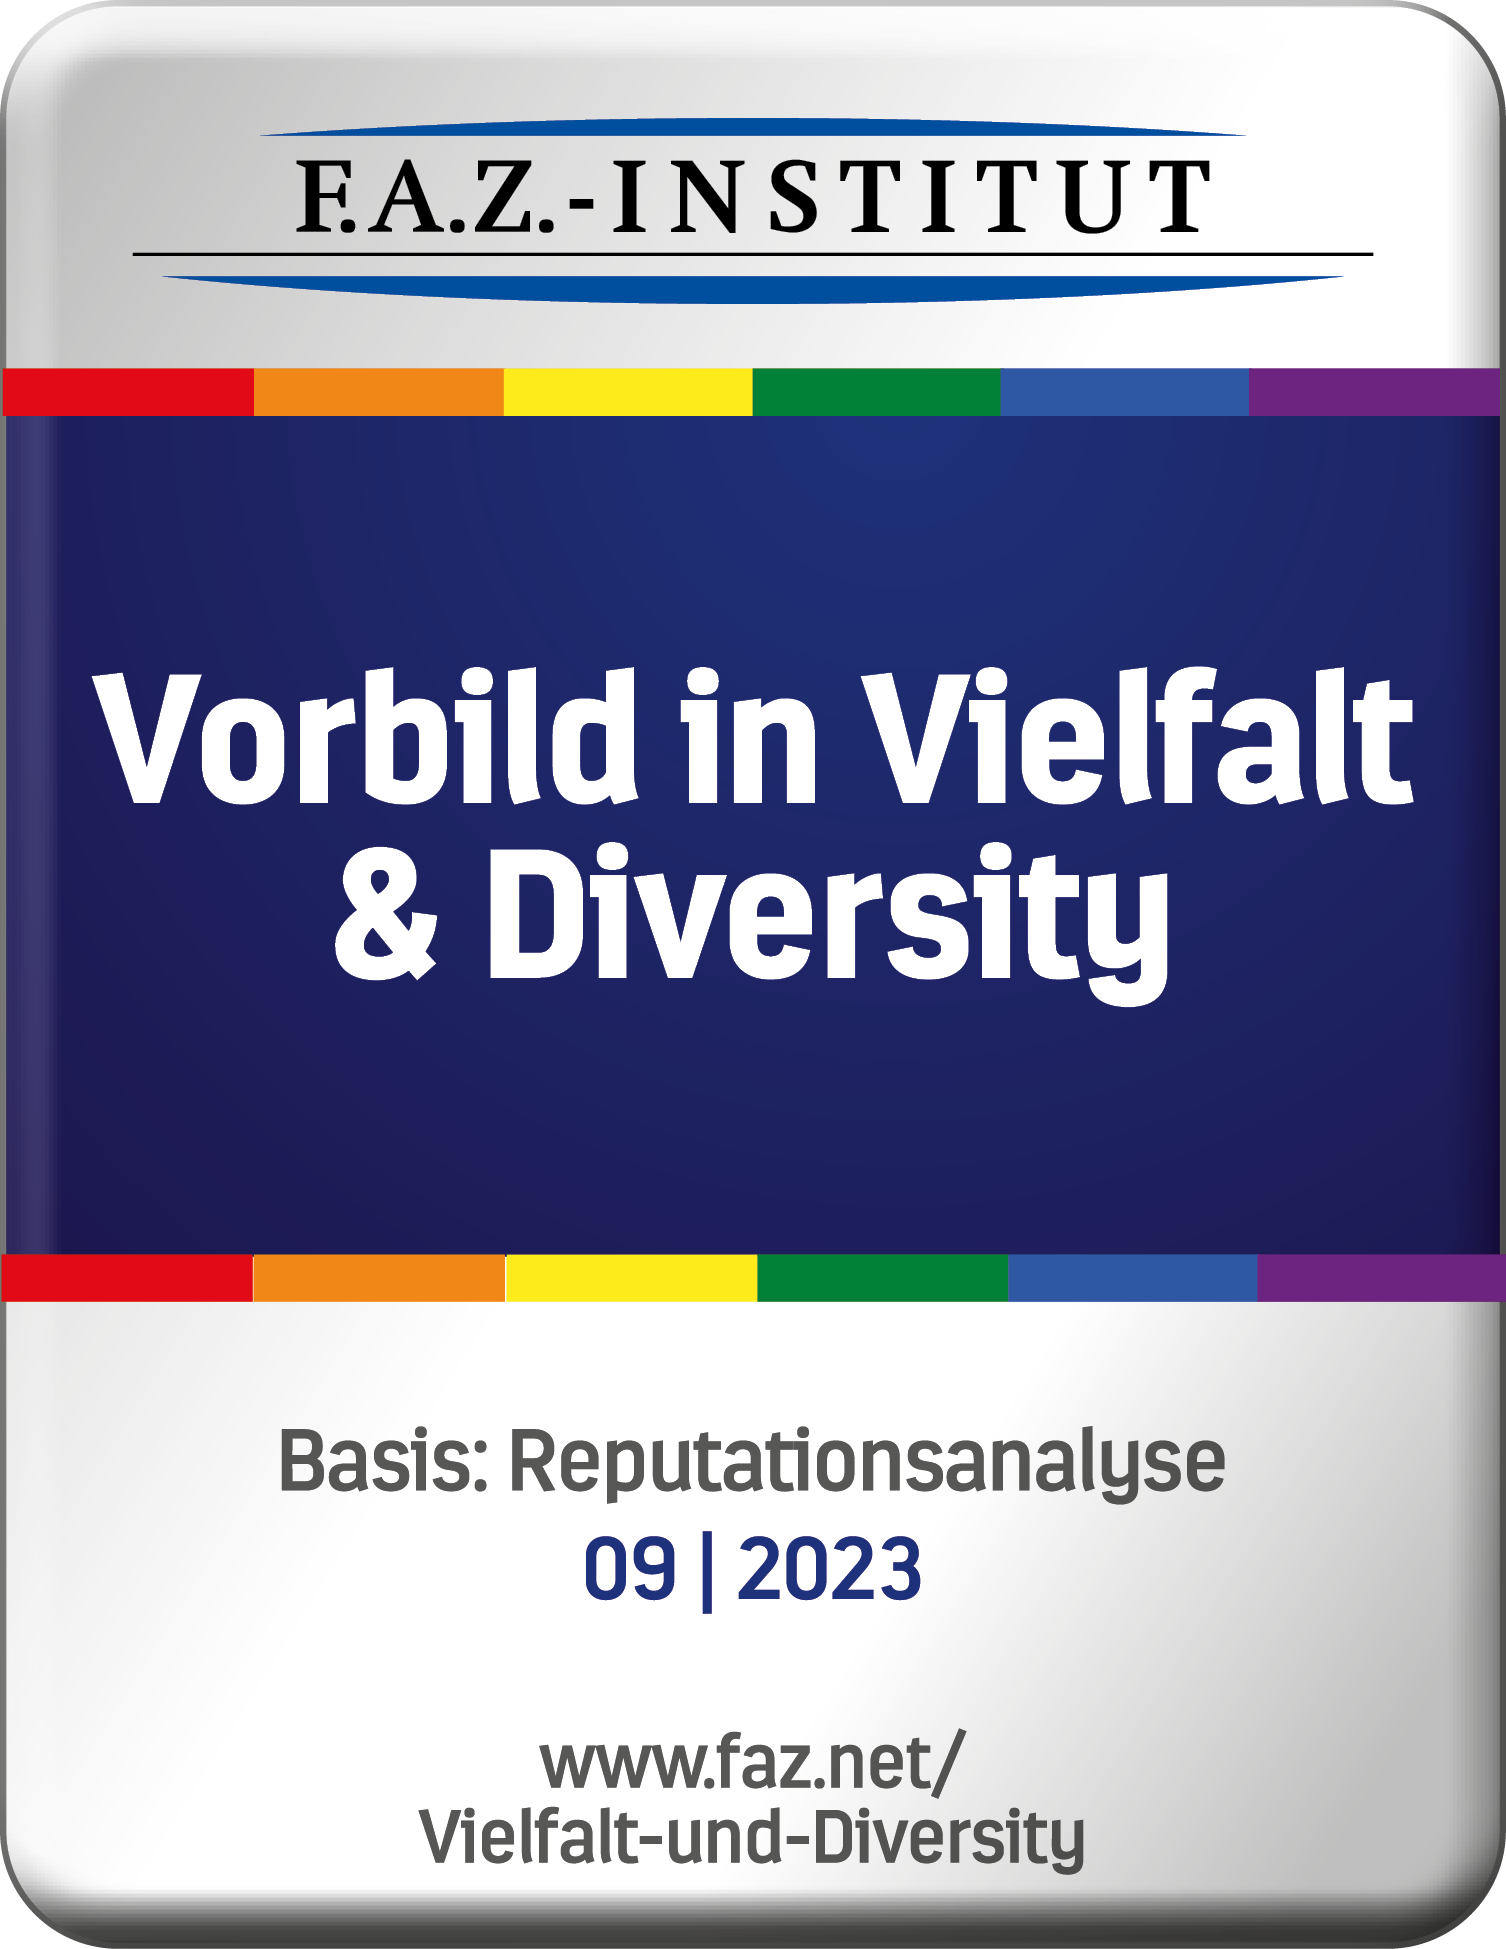 Vorbild in Viefalt & Diversity 2023